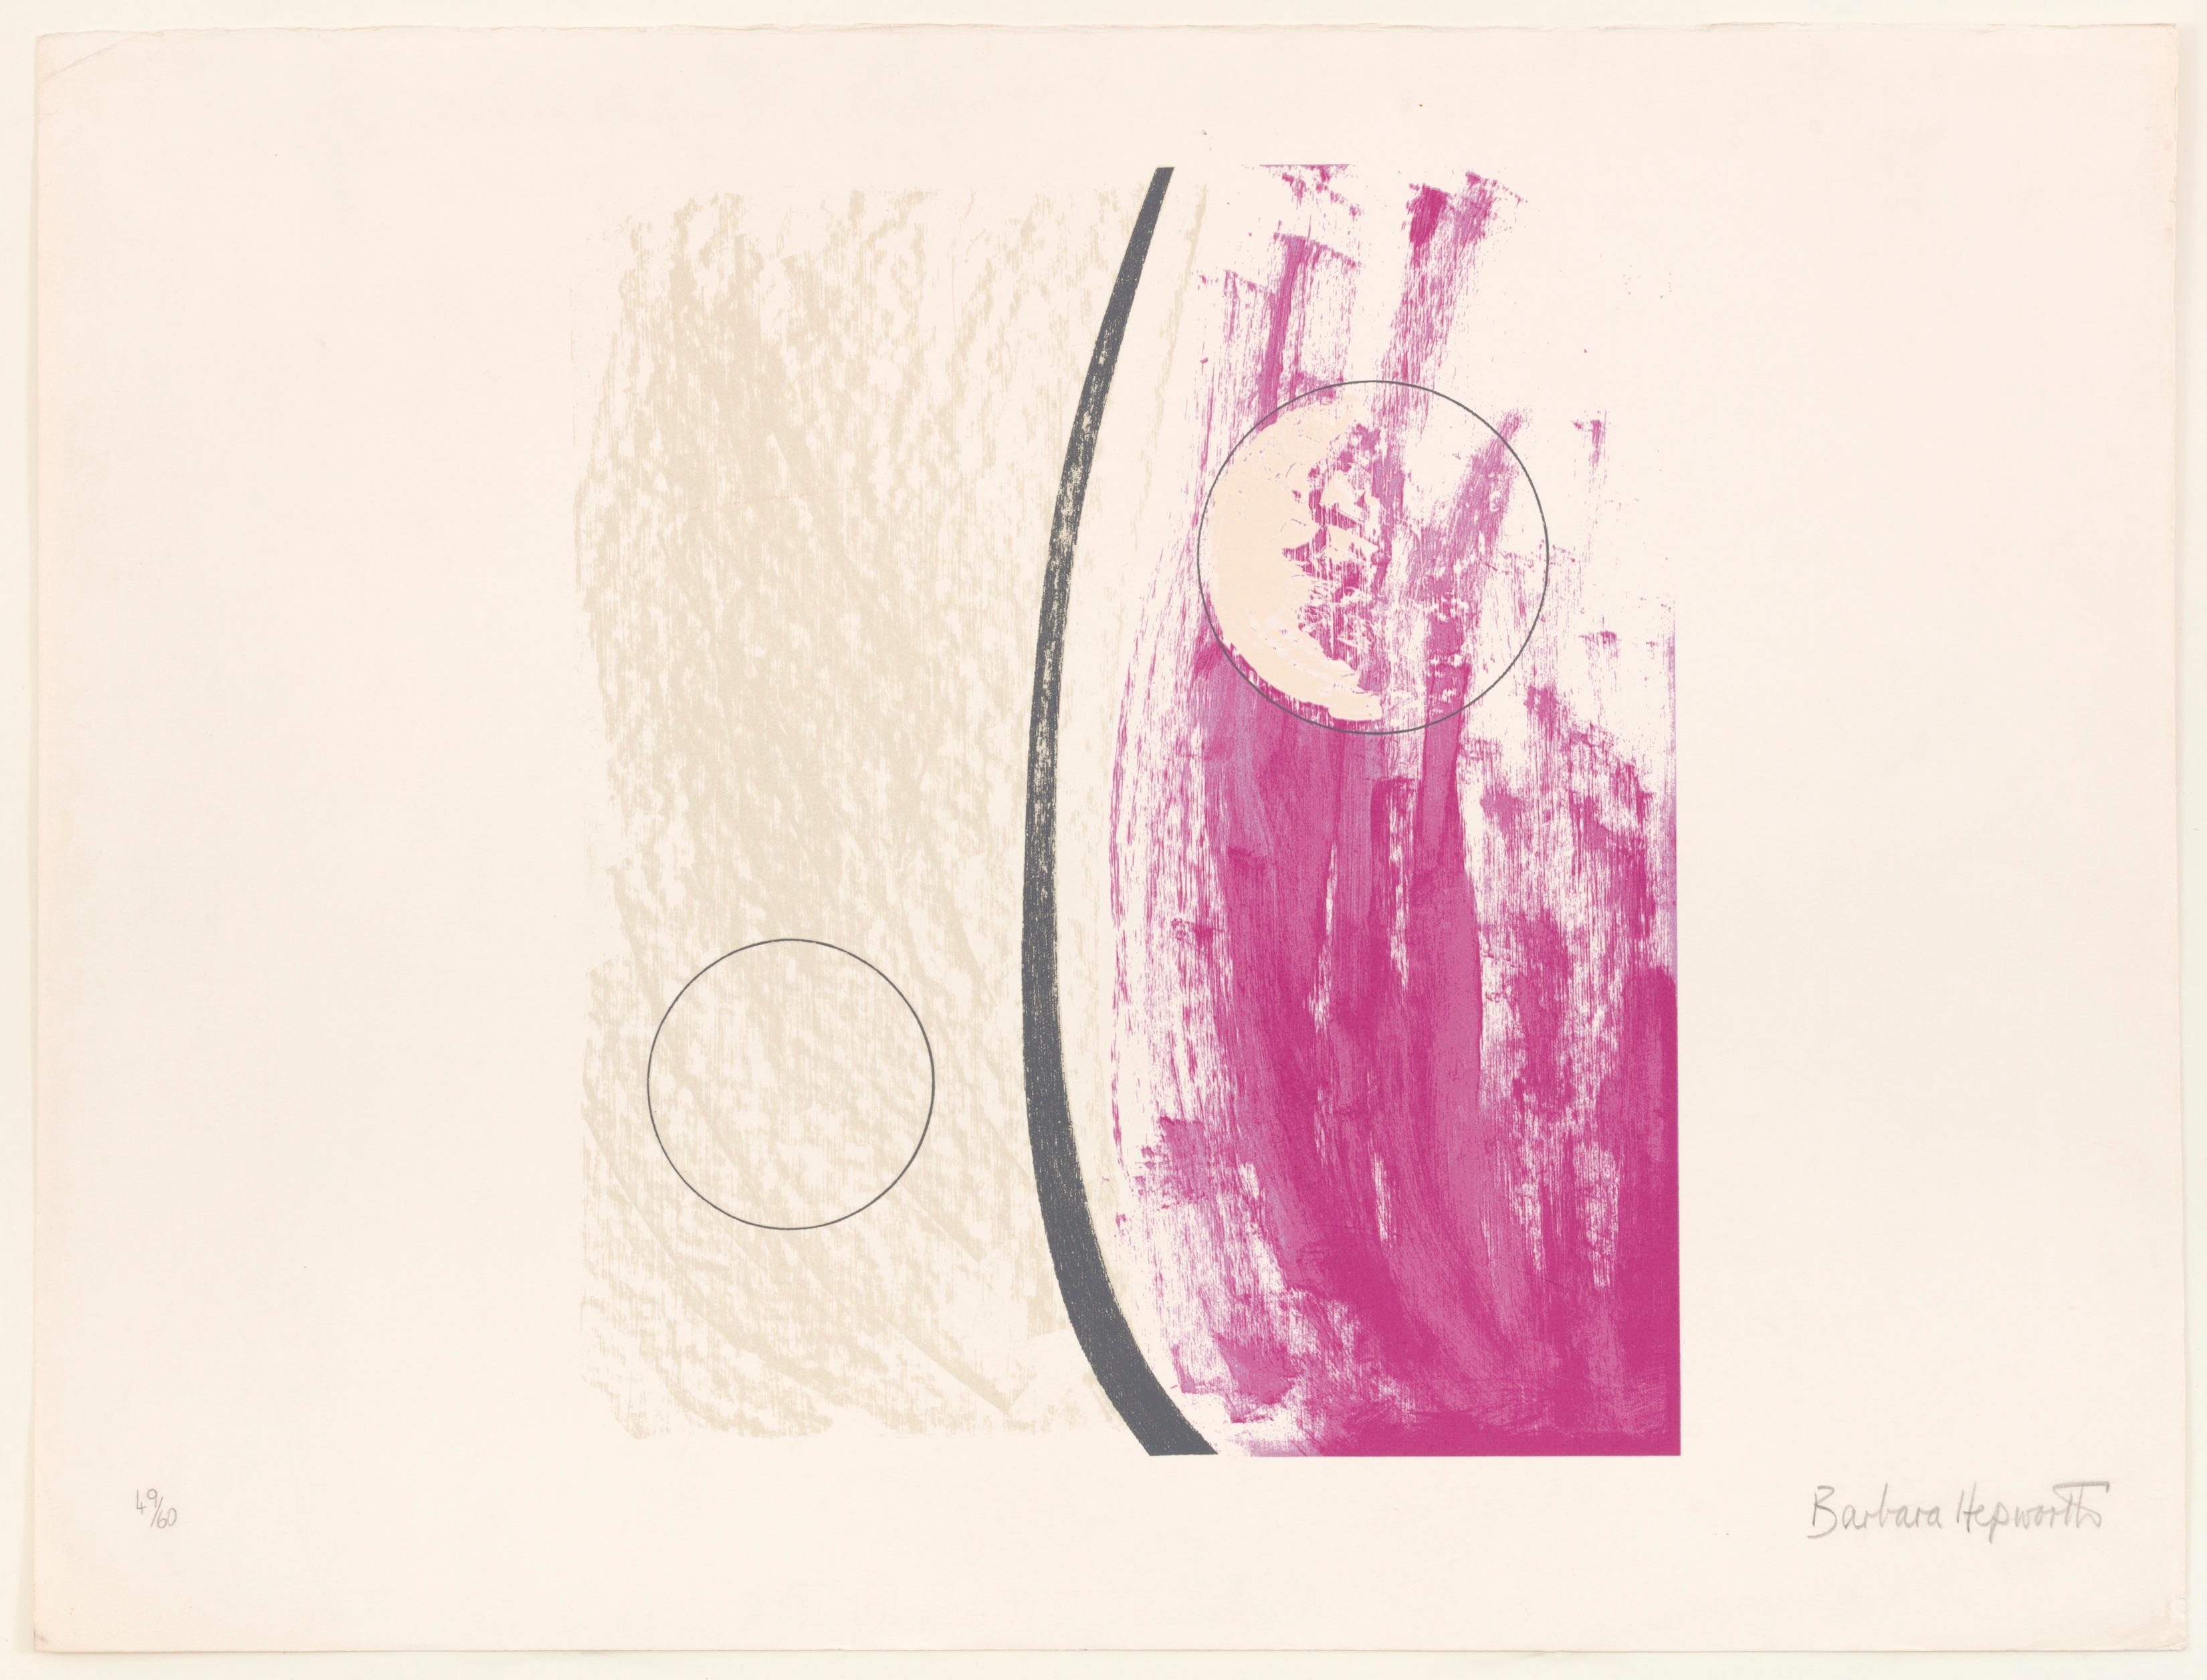 Abstract Print Barbara Hepworth - Orchidée